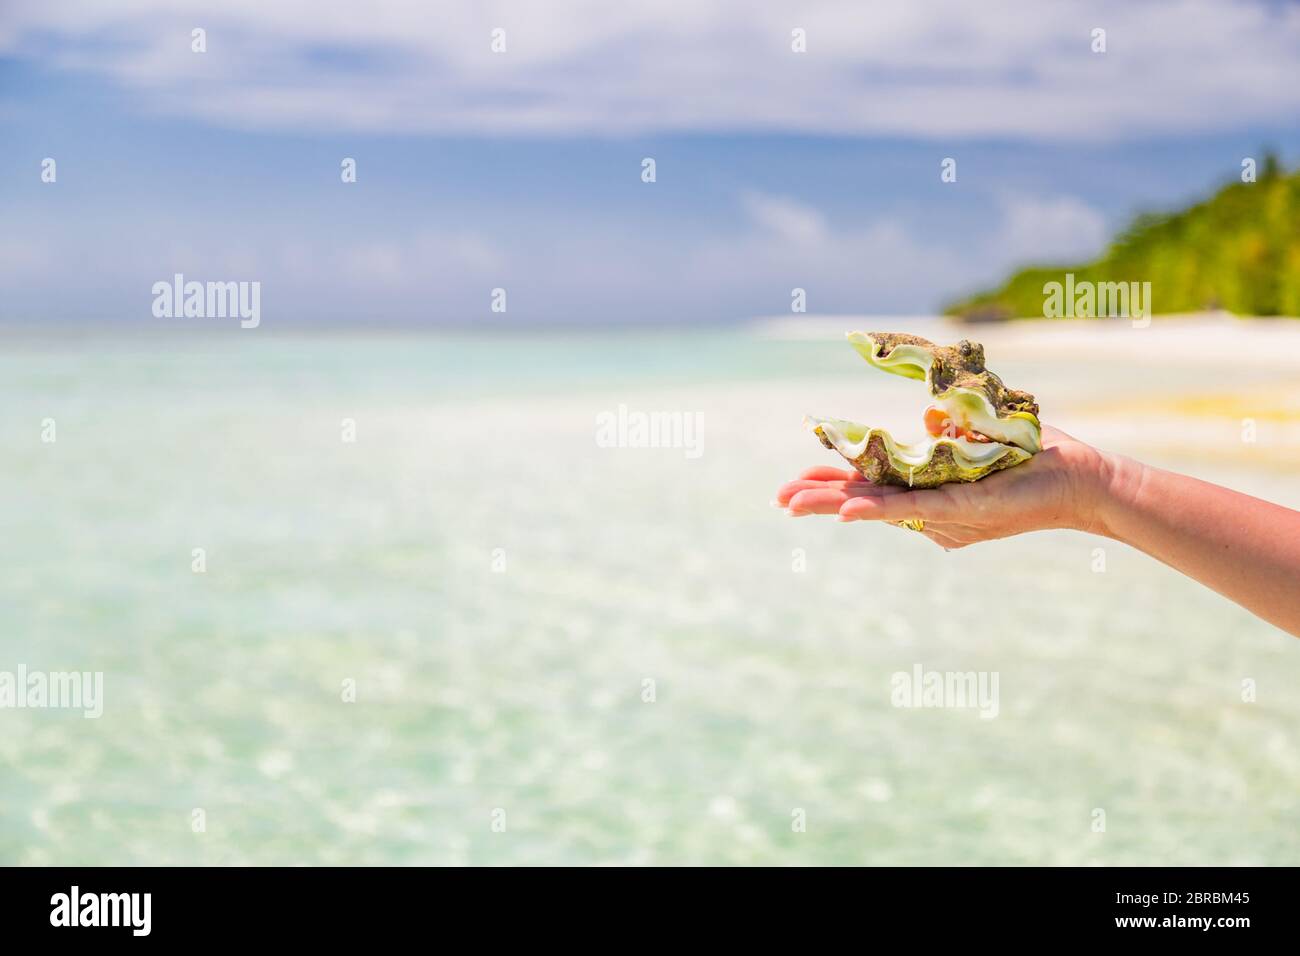 Conchiglia di mare nelle mani della donna sullo sfondo tropicale della spiaggia. Souvenir dell'isola tropicale. Conchiglia in mano femminile. Snorkeling o immersioni subacquee Foto Stock